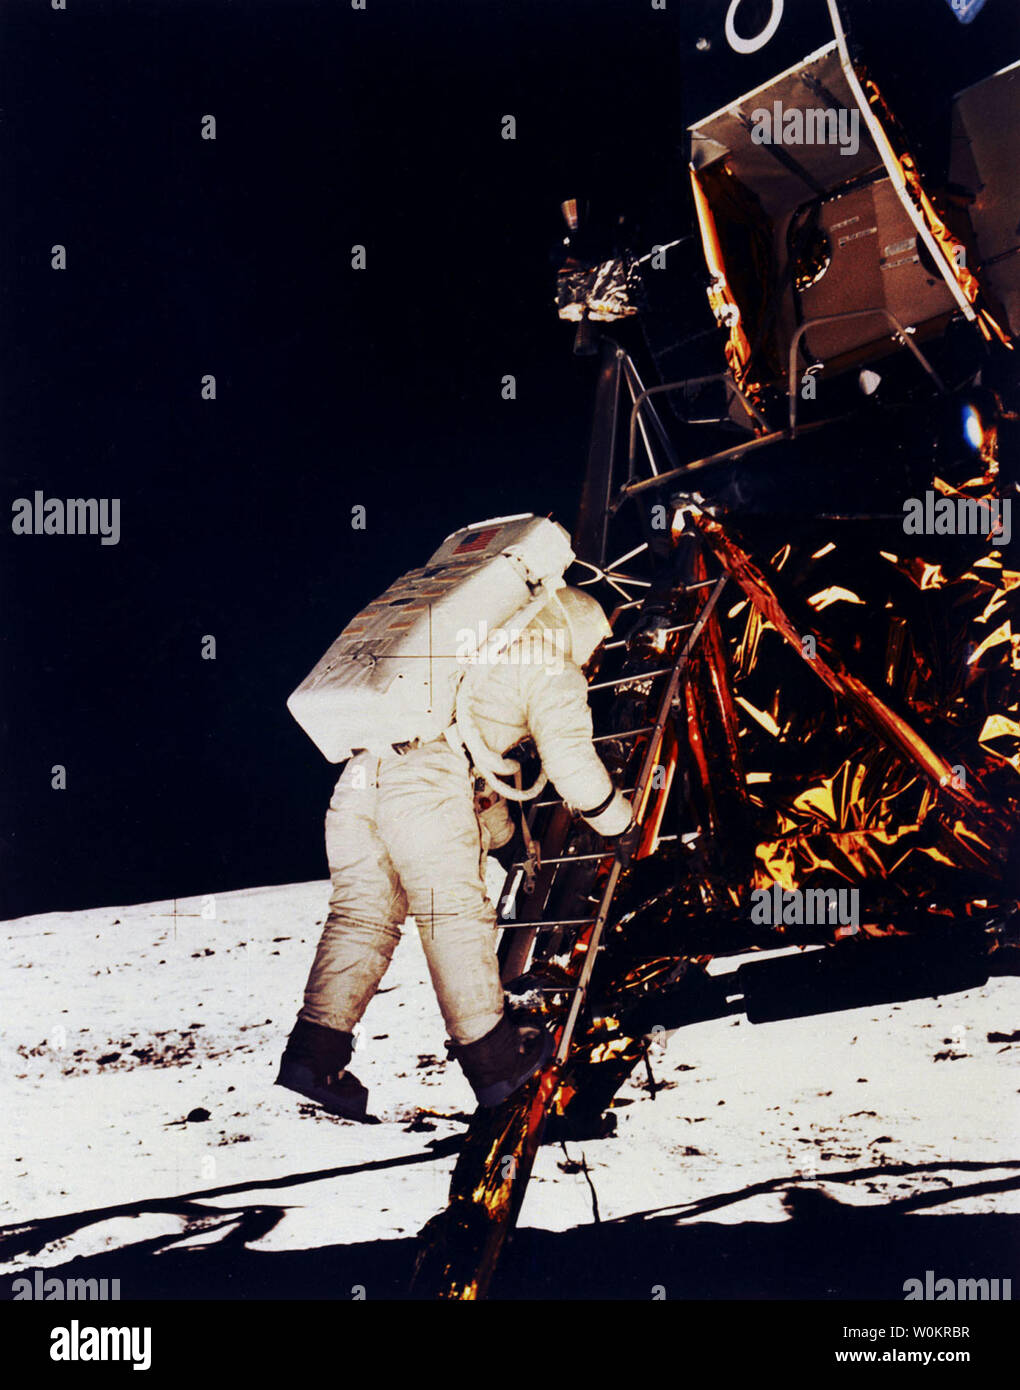 L'astronaute Buzz Aldrin descend du module lunaire Eagle et pas sur la lune le 20 juillet 1969, il y a 35 ans. Photo prise par Neil Armstrong, le premier homme sur la lune. (Photo d'UPI/NASA) Banque D'Images